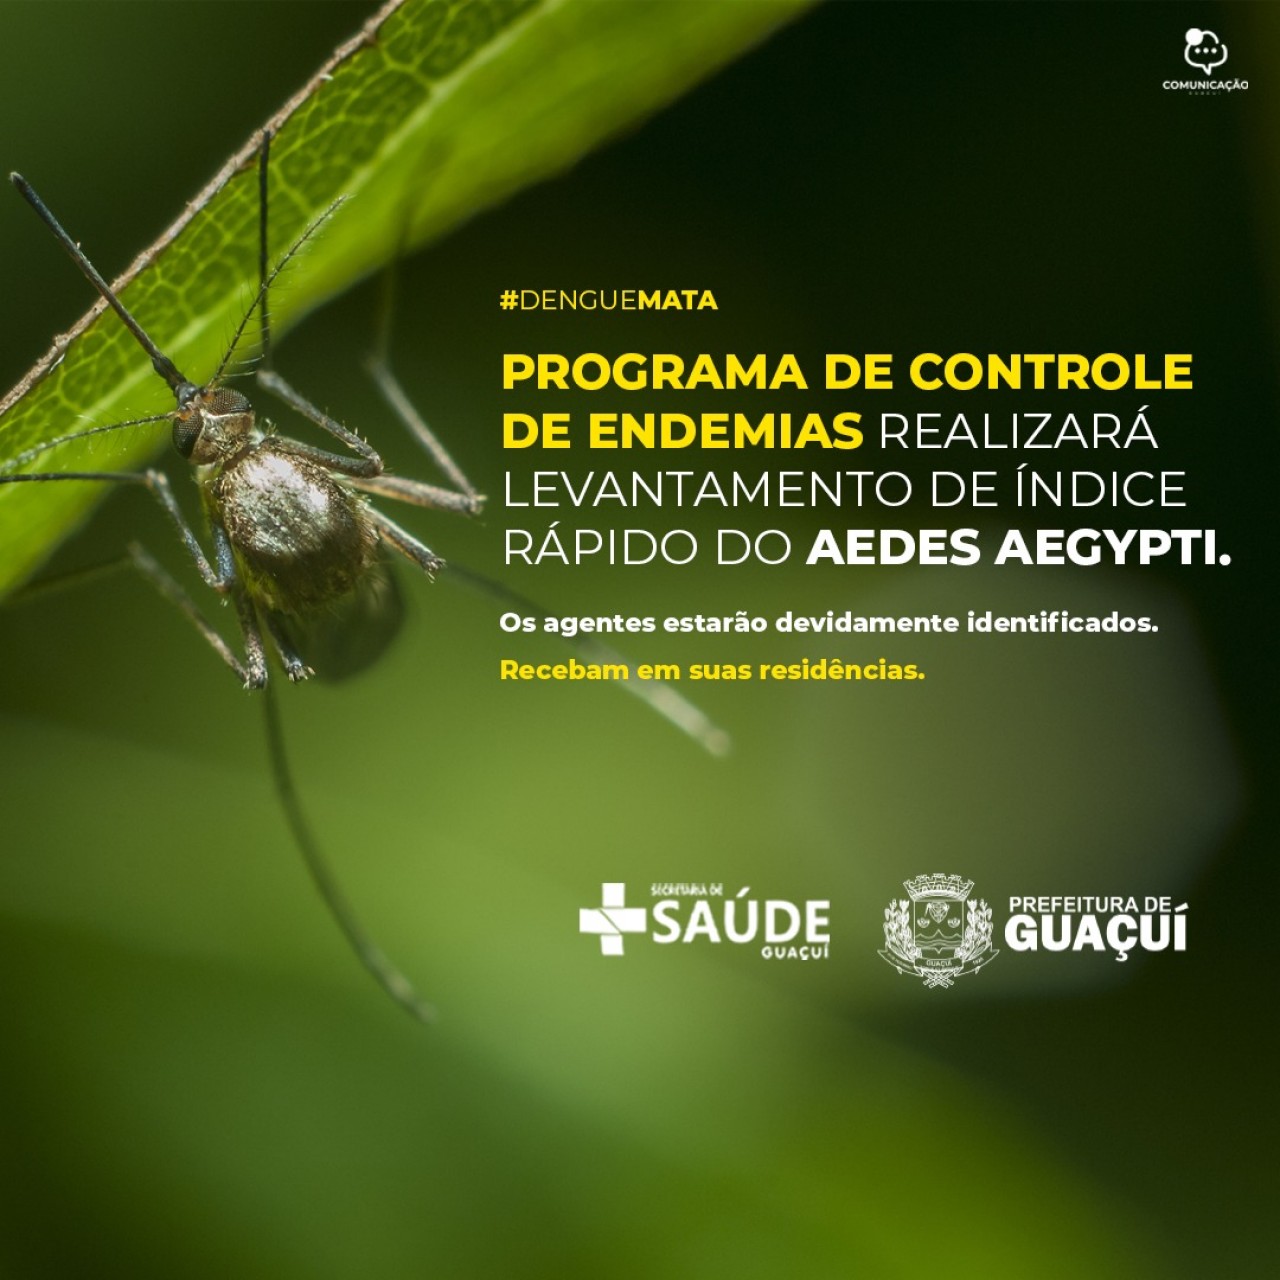 Programa de controle de endemias realizará levantamento de índice rápido do Aedes aegypti.